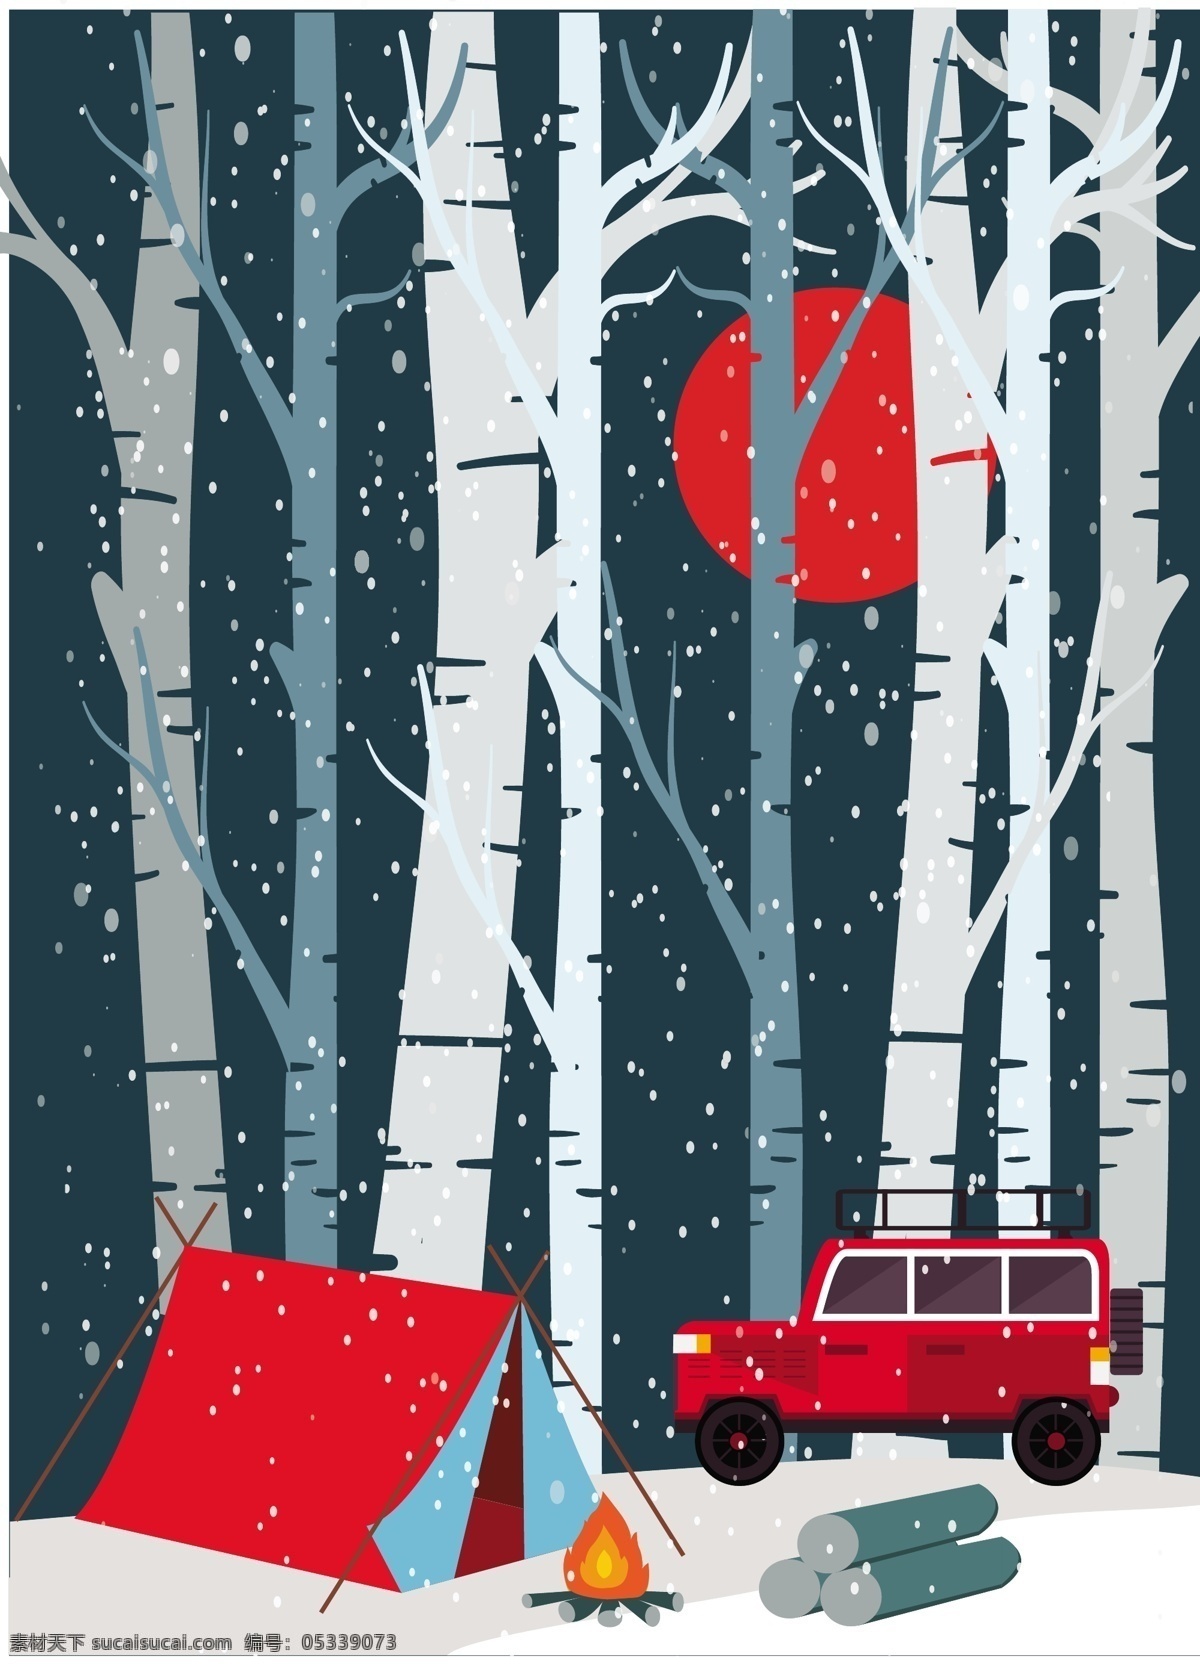 冬季 森山 露营 背景 图 广告背景 广告 背景素材 大树 红色帐篷 汽车 火堆 木材 红色月亮 雪花 雪地